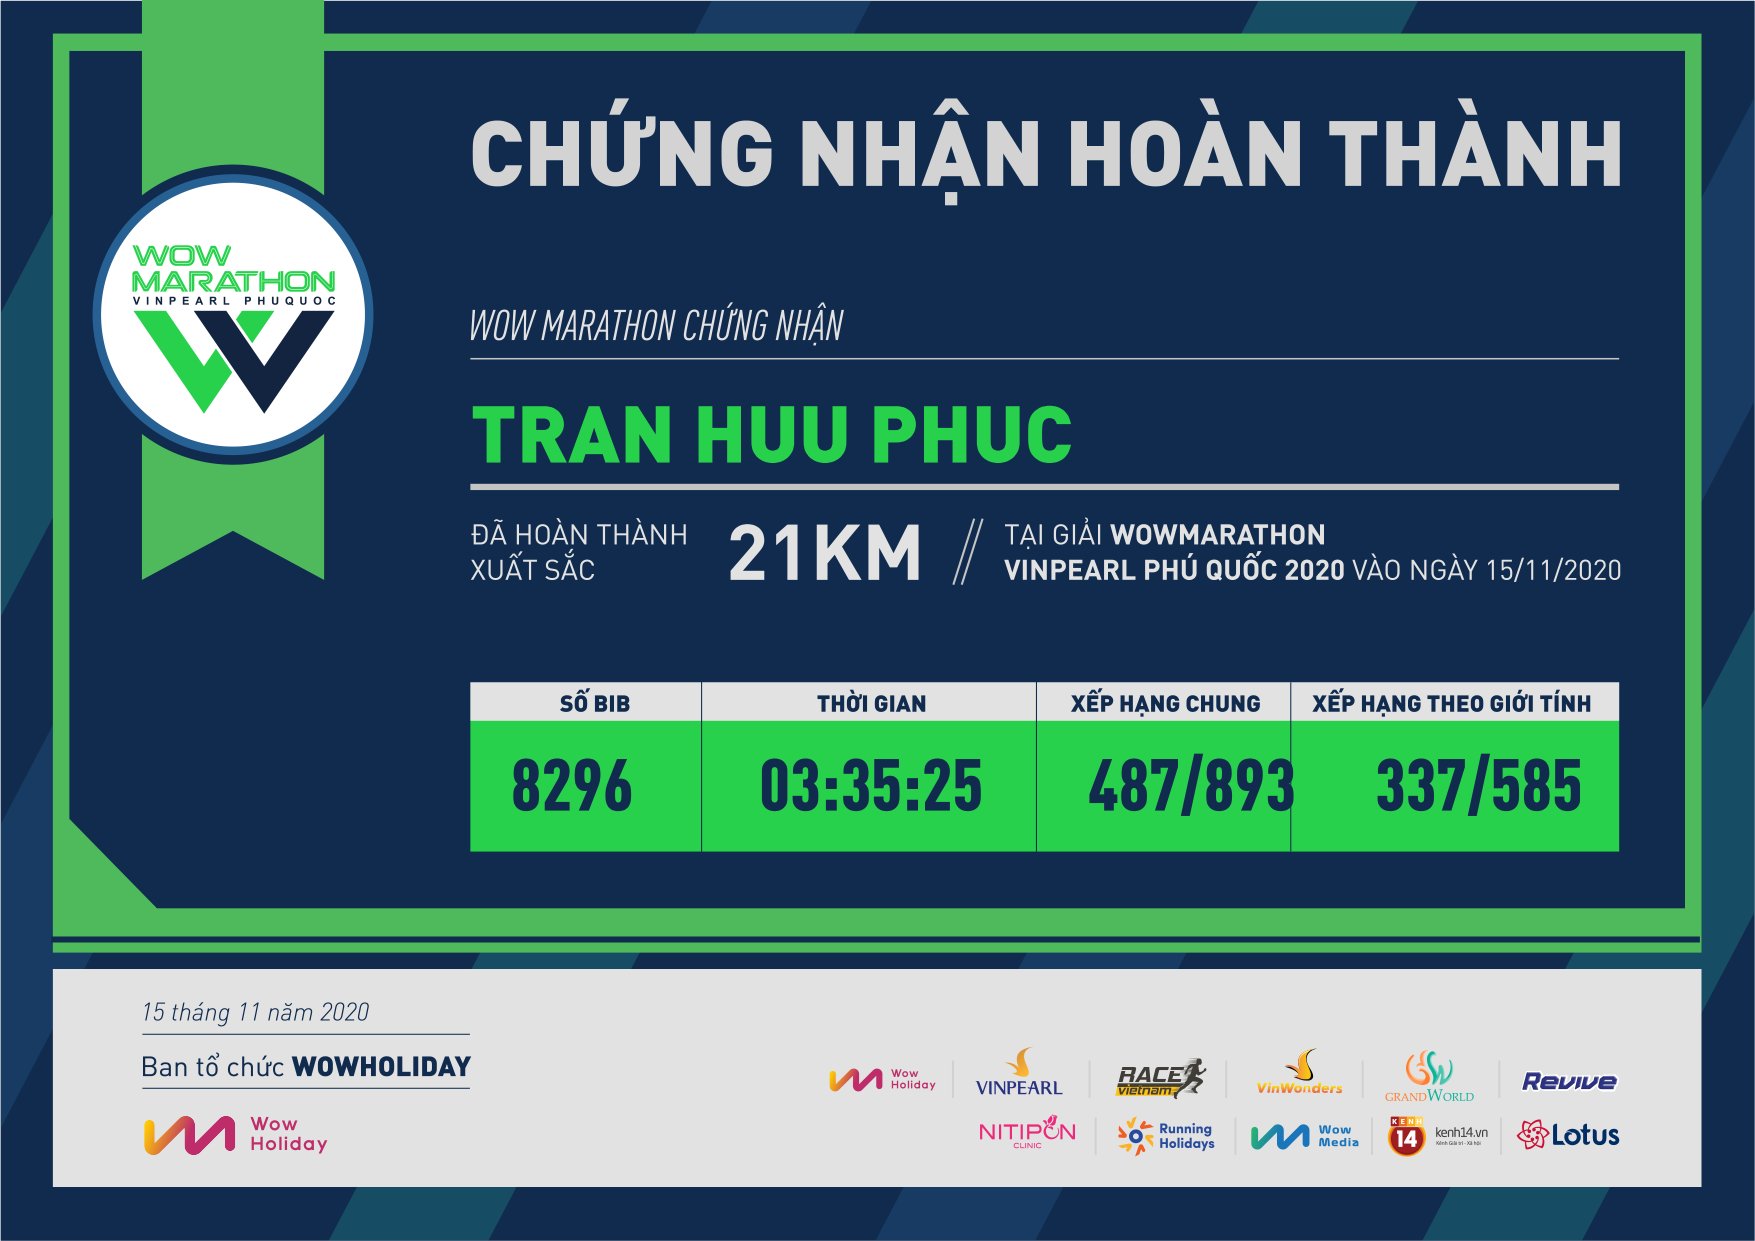 8296 - Tran Huu Phuc